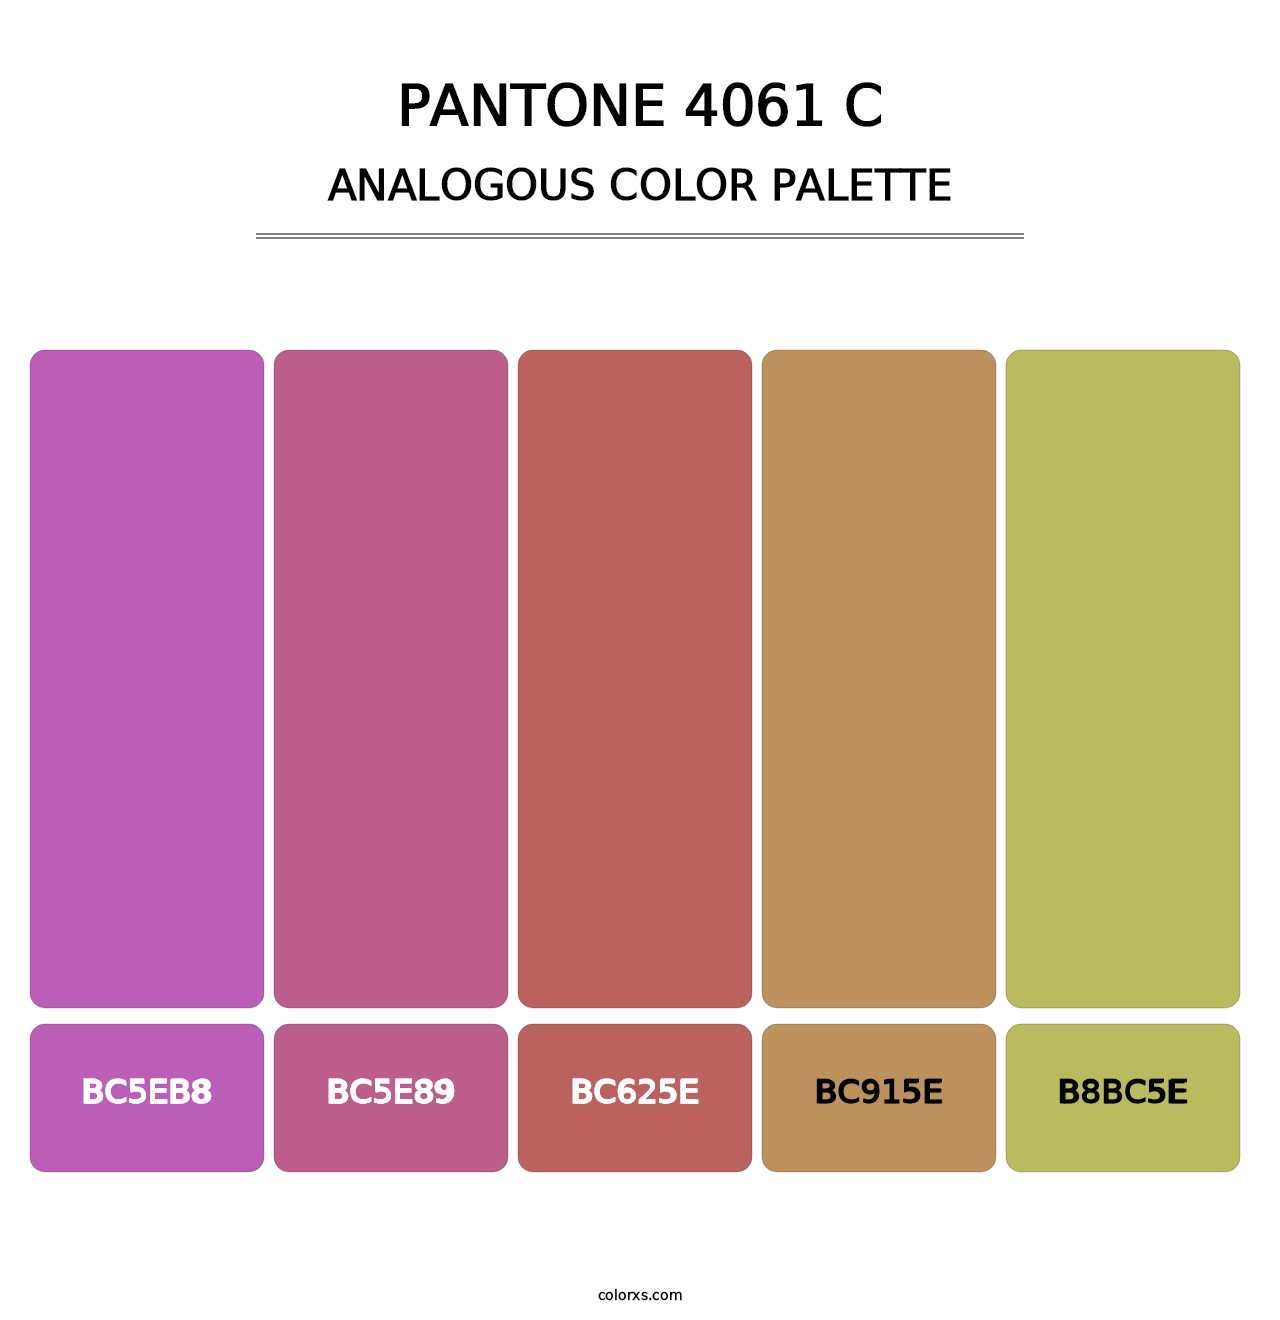 PANTONE 4061 C - Analogous Color Palette